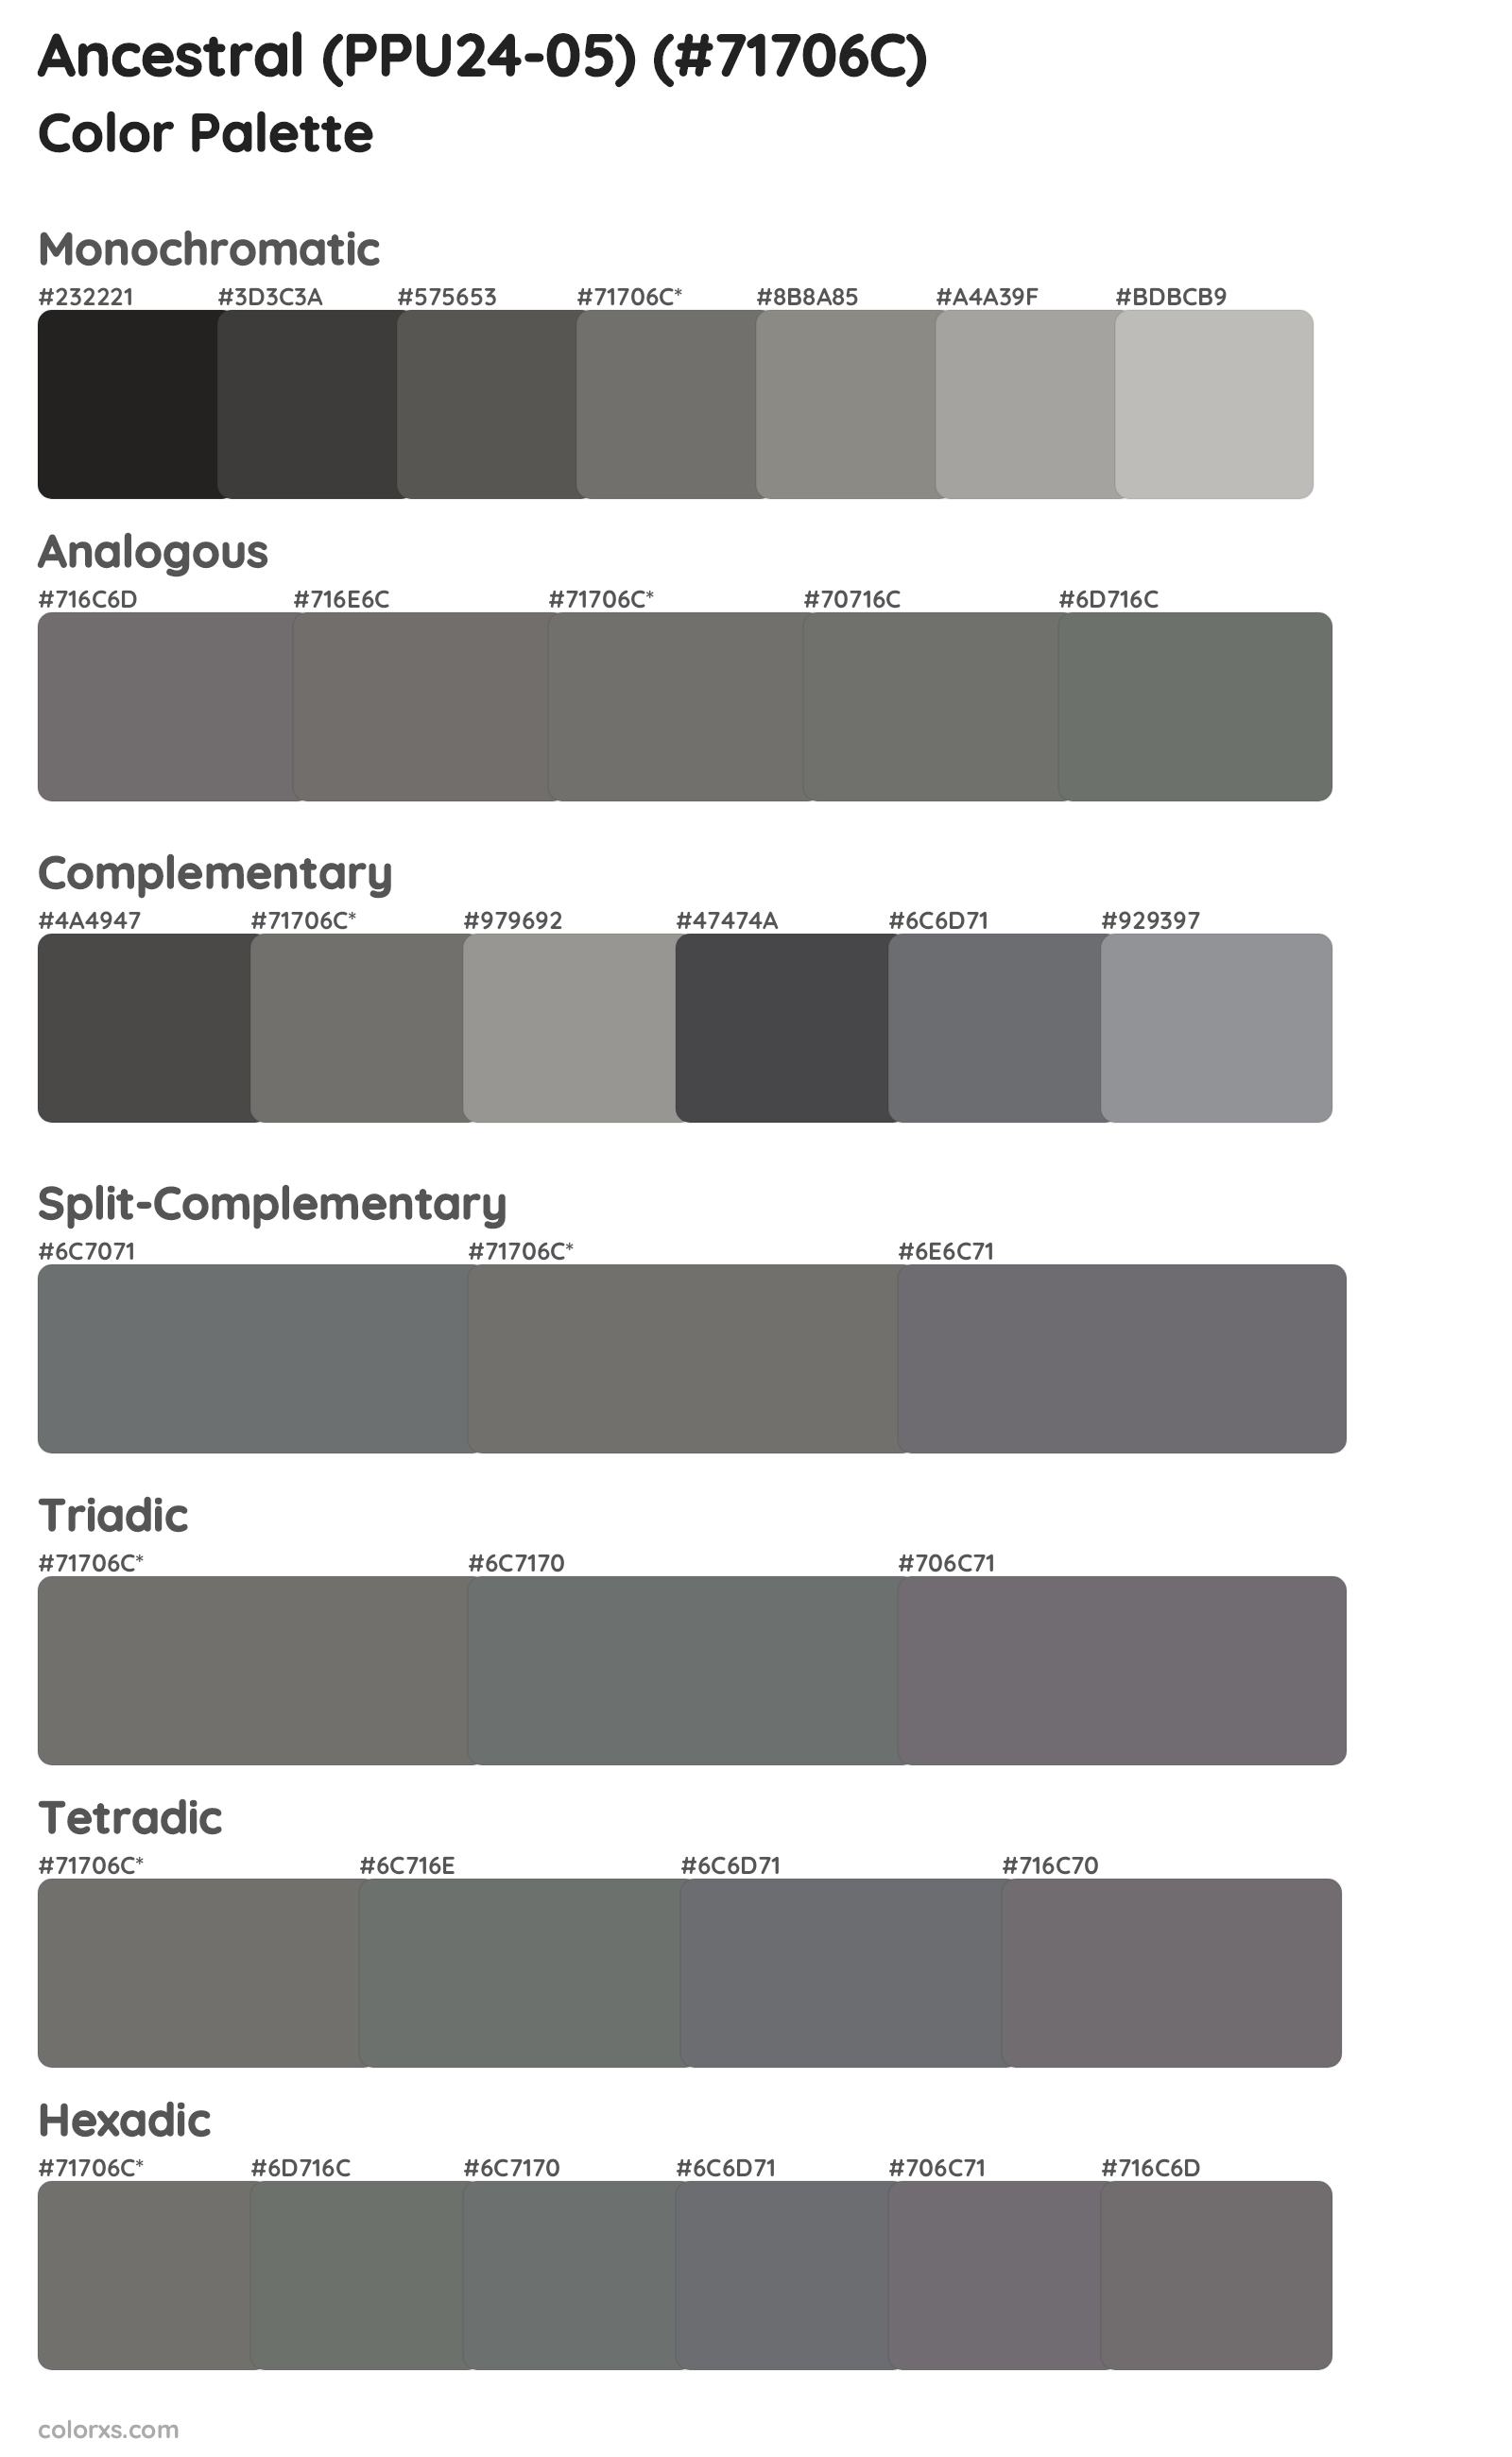 Ancestral (PPU24-05) Color Scheme Palettes